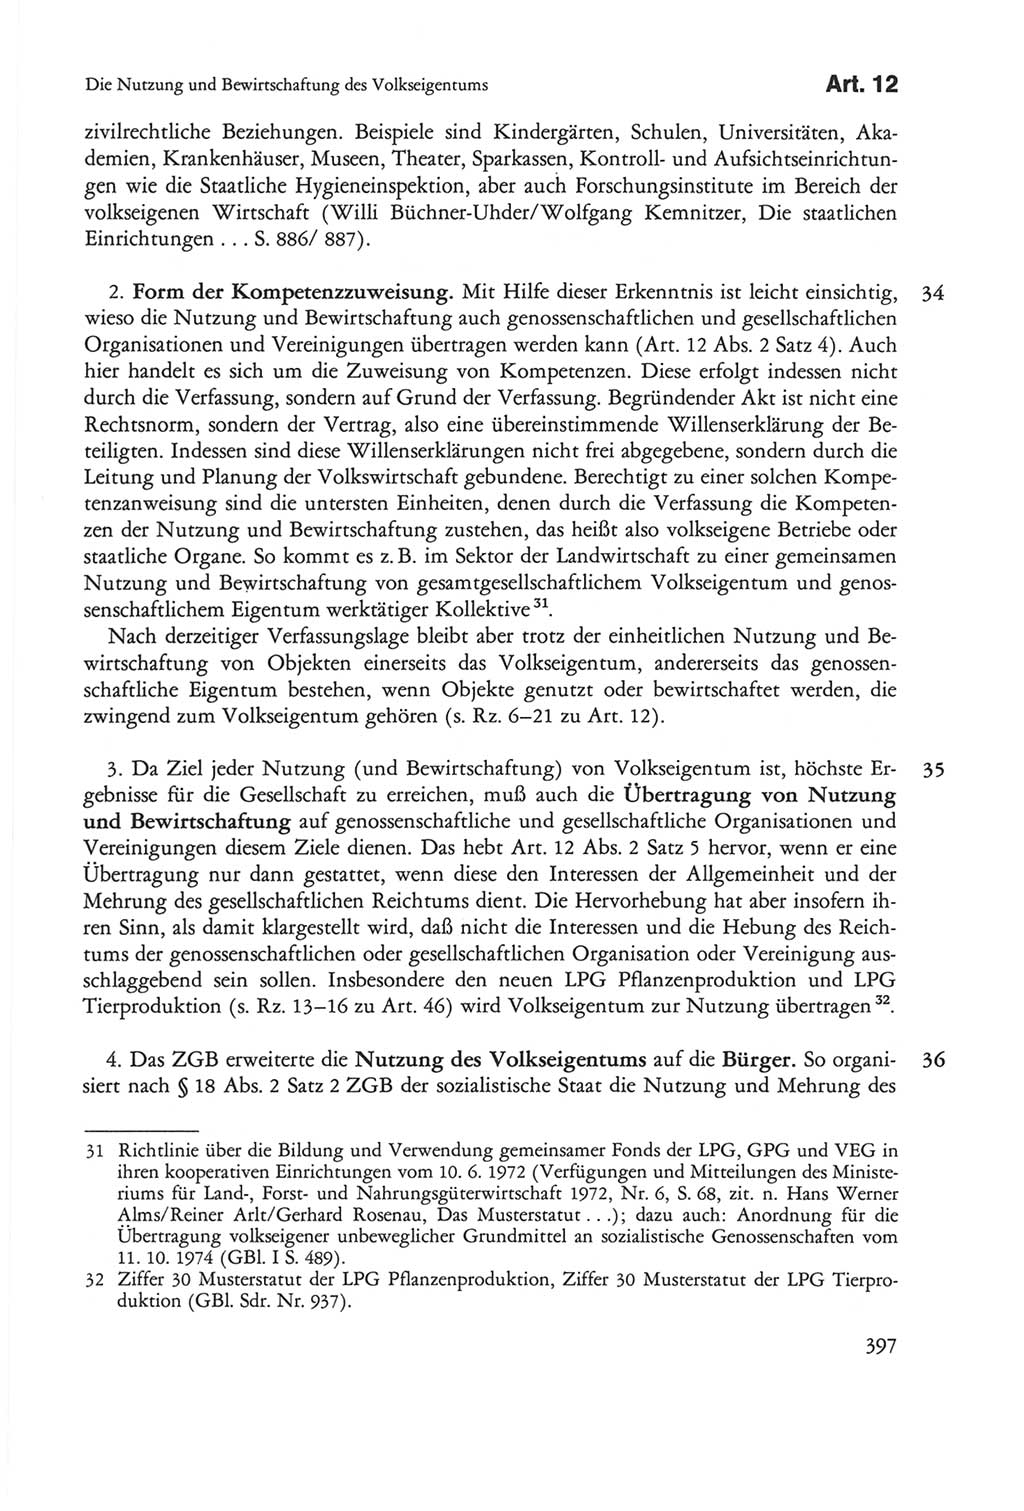 Die sozialistische Verfassung der Deutschen Demokratischen Republik (DDR), Kommentar mit einem Nachtrag 1997, Seite 397 (Soz. Verf. DDR Komm. Nachtr. 1997, S. 397)